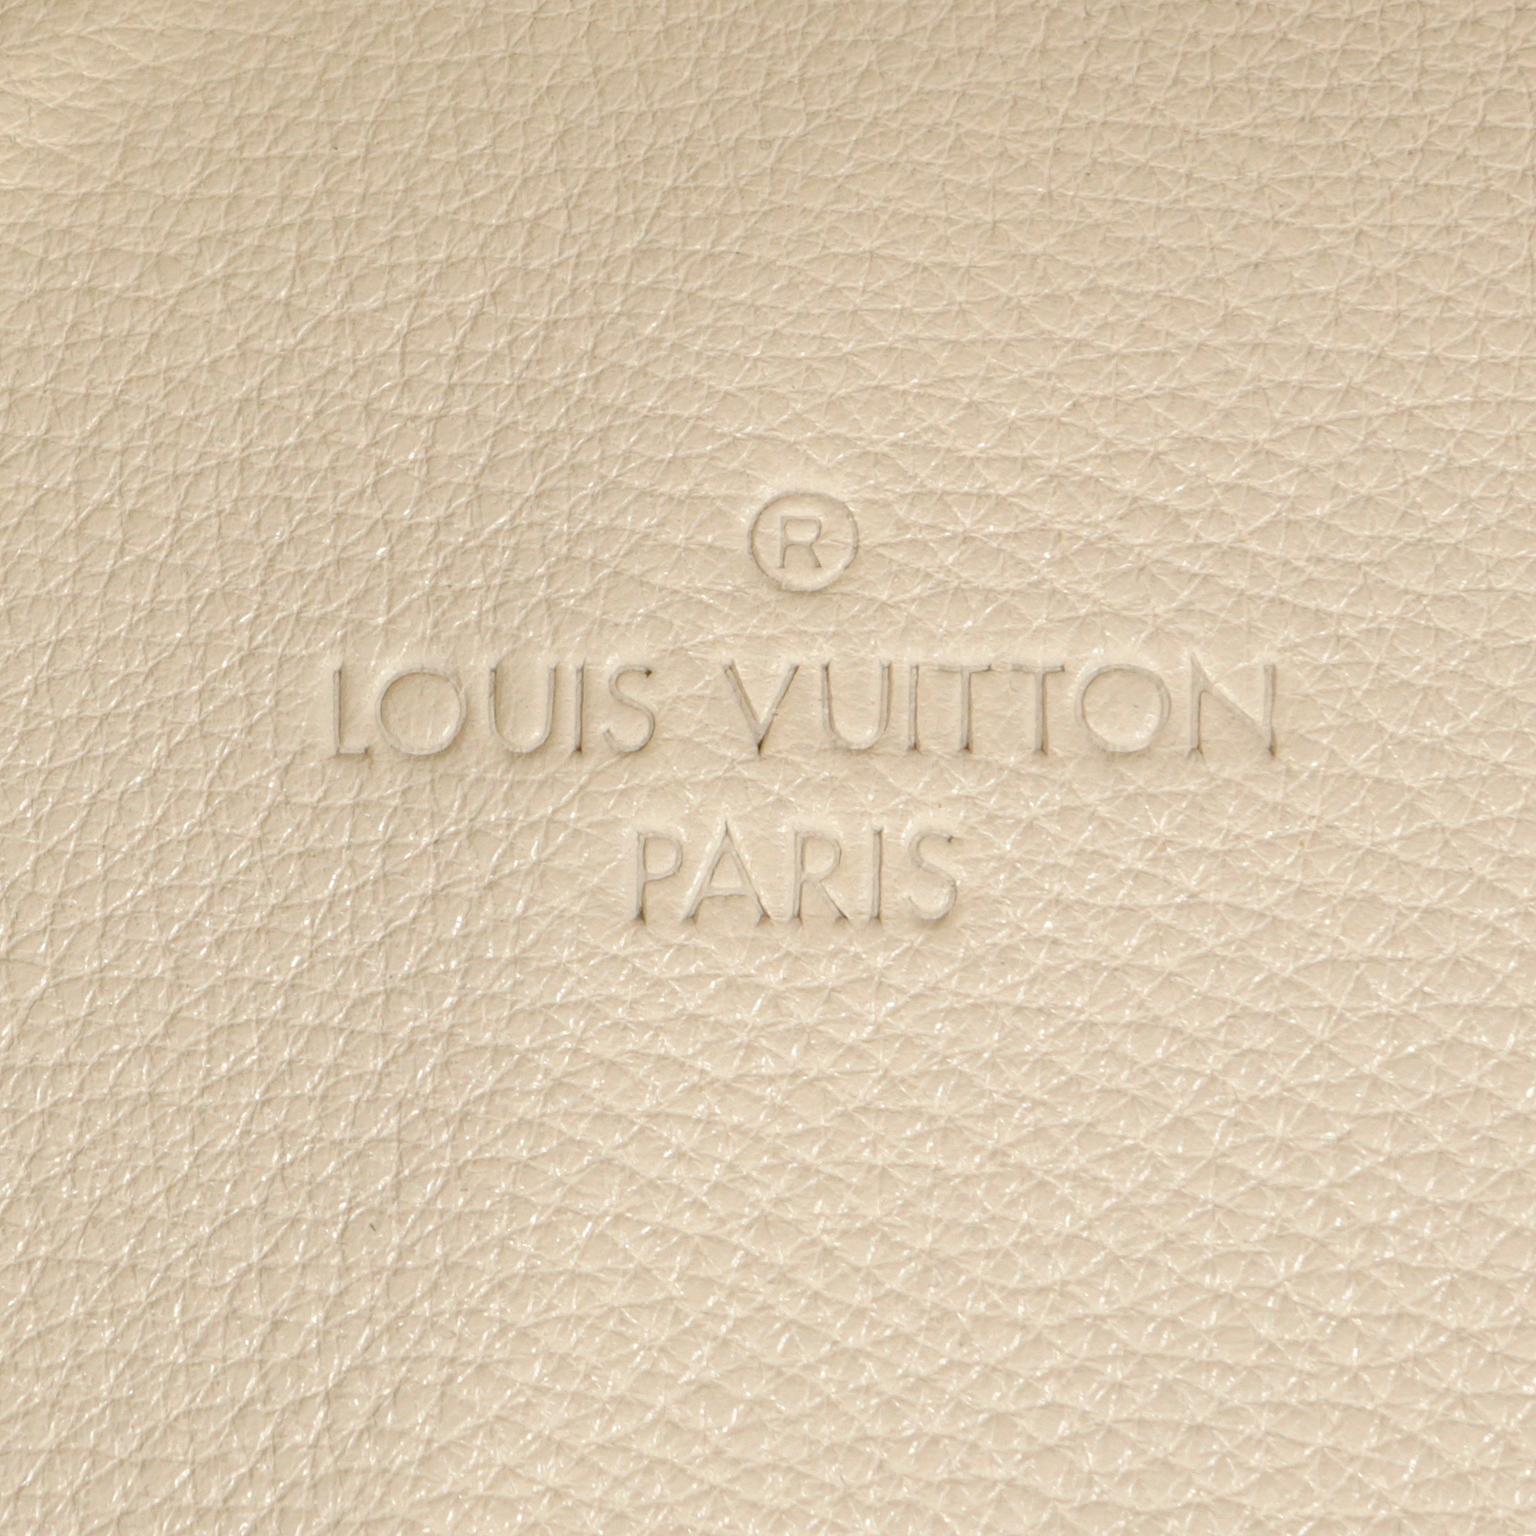 Louis Vuitton Ivory Leather Sophia Coppola SC Bag 2